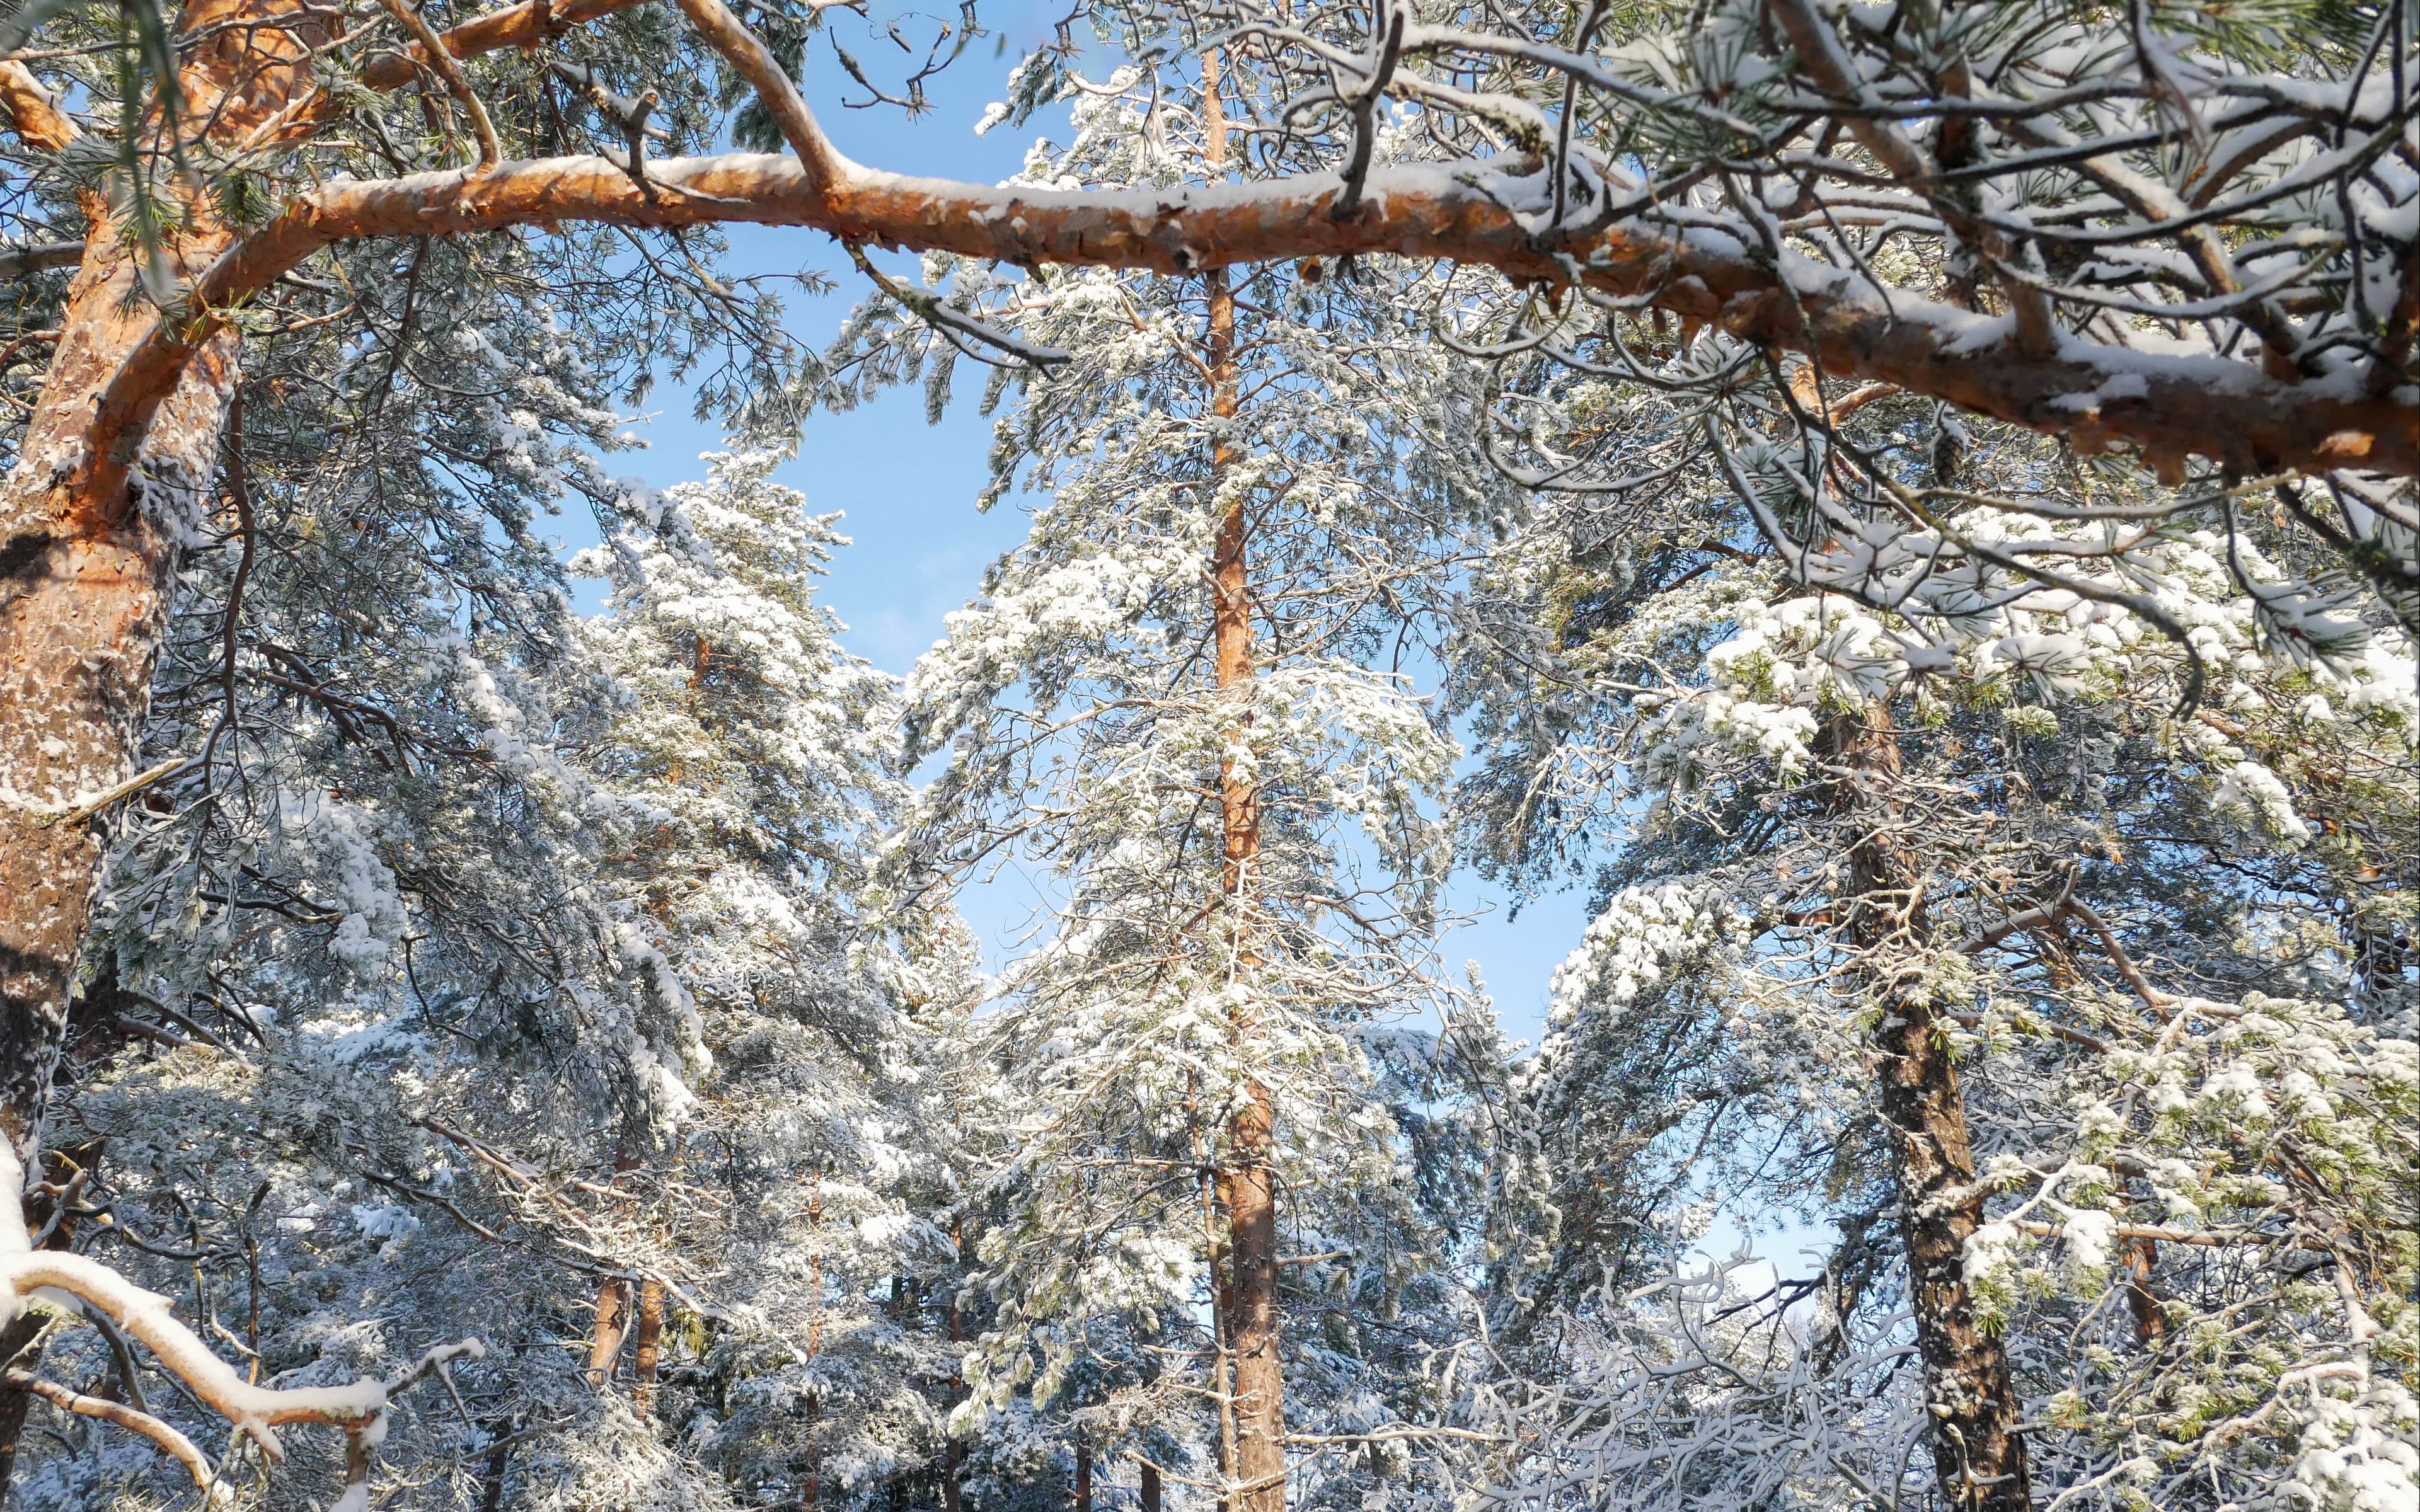 Fondos de pantalla Pinos en el bosque durante el invierno